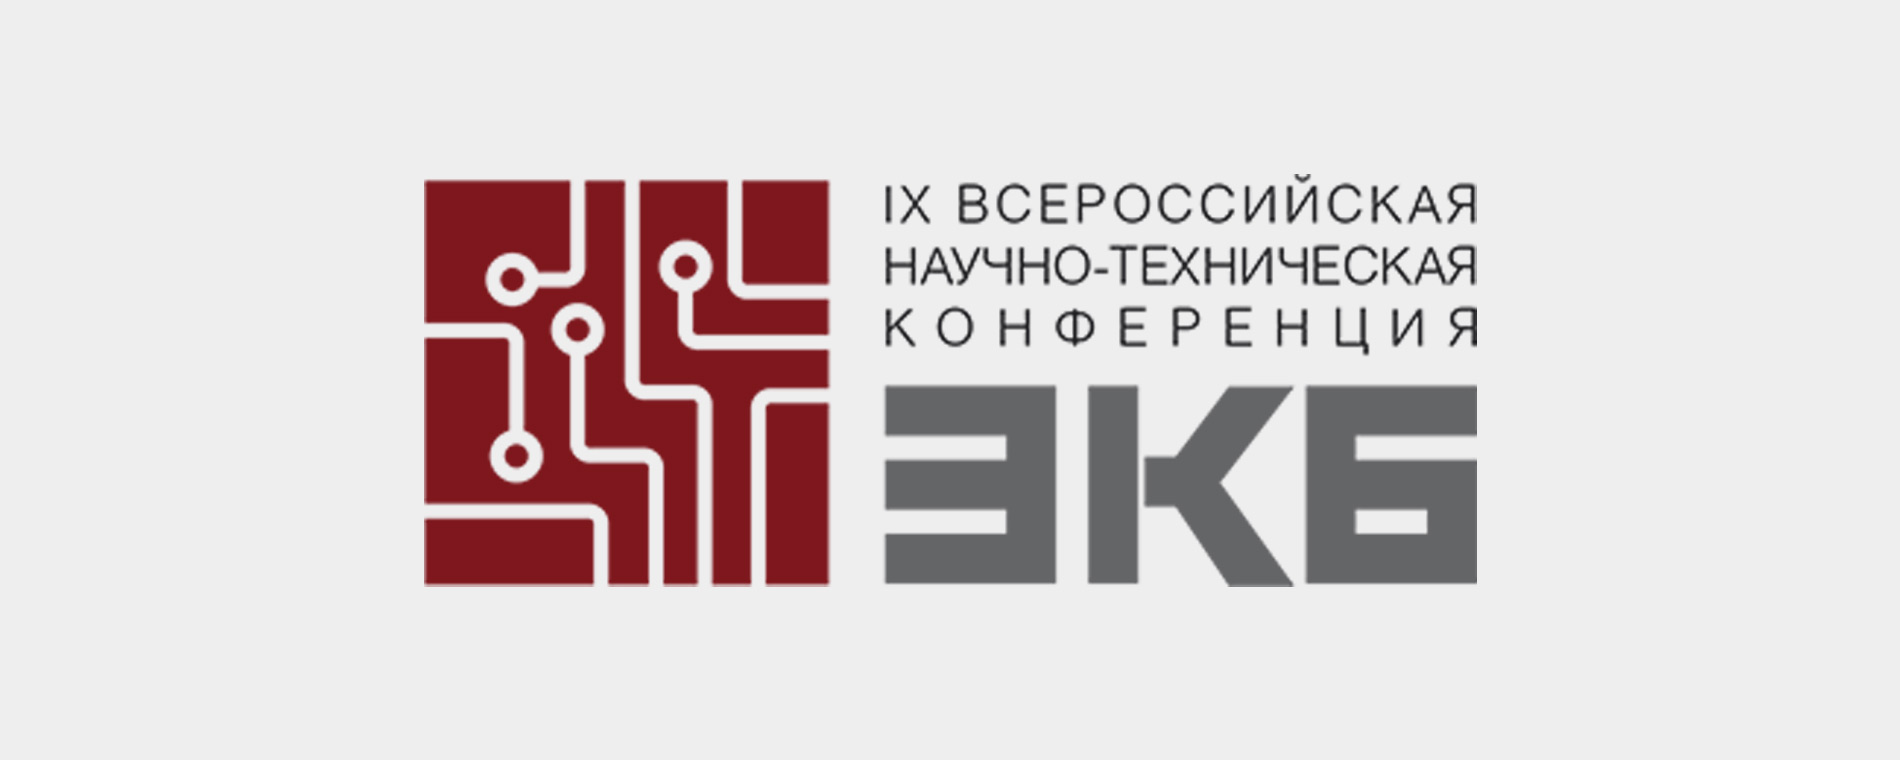 Вопросы обеспечения предприятий промышленности качественной ЭКБ обсудили участники IX всероссийской научно-технической конференции «ЭКБ-2020»